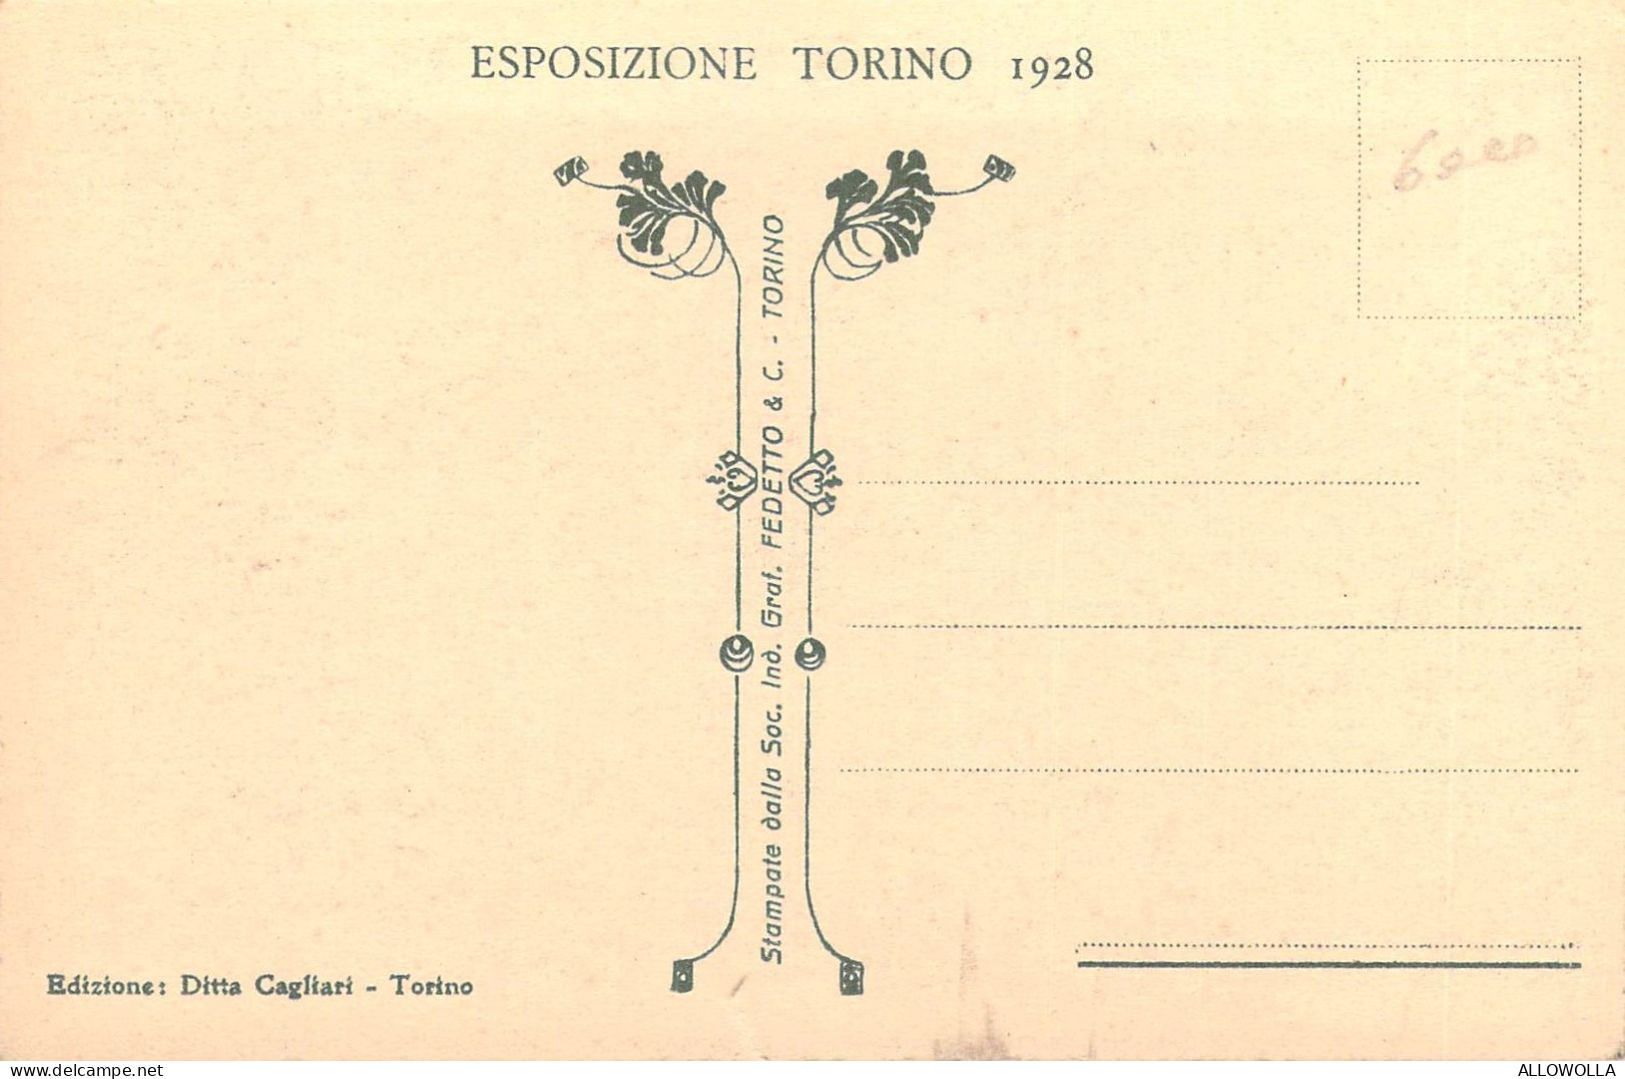 24201 "TORINO-PALAZZINA UFFICIO TECNICO ESPOSIZIONE-ESPOSIZIONE TORINO1928"-VERA FOTO-CART. NON SPED. - Exposiciones